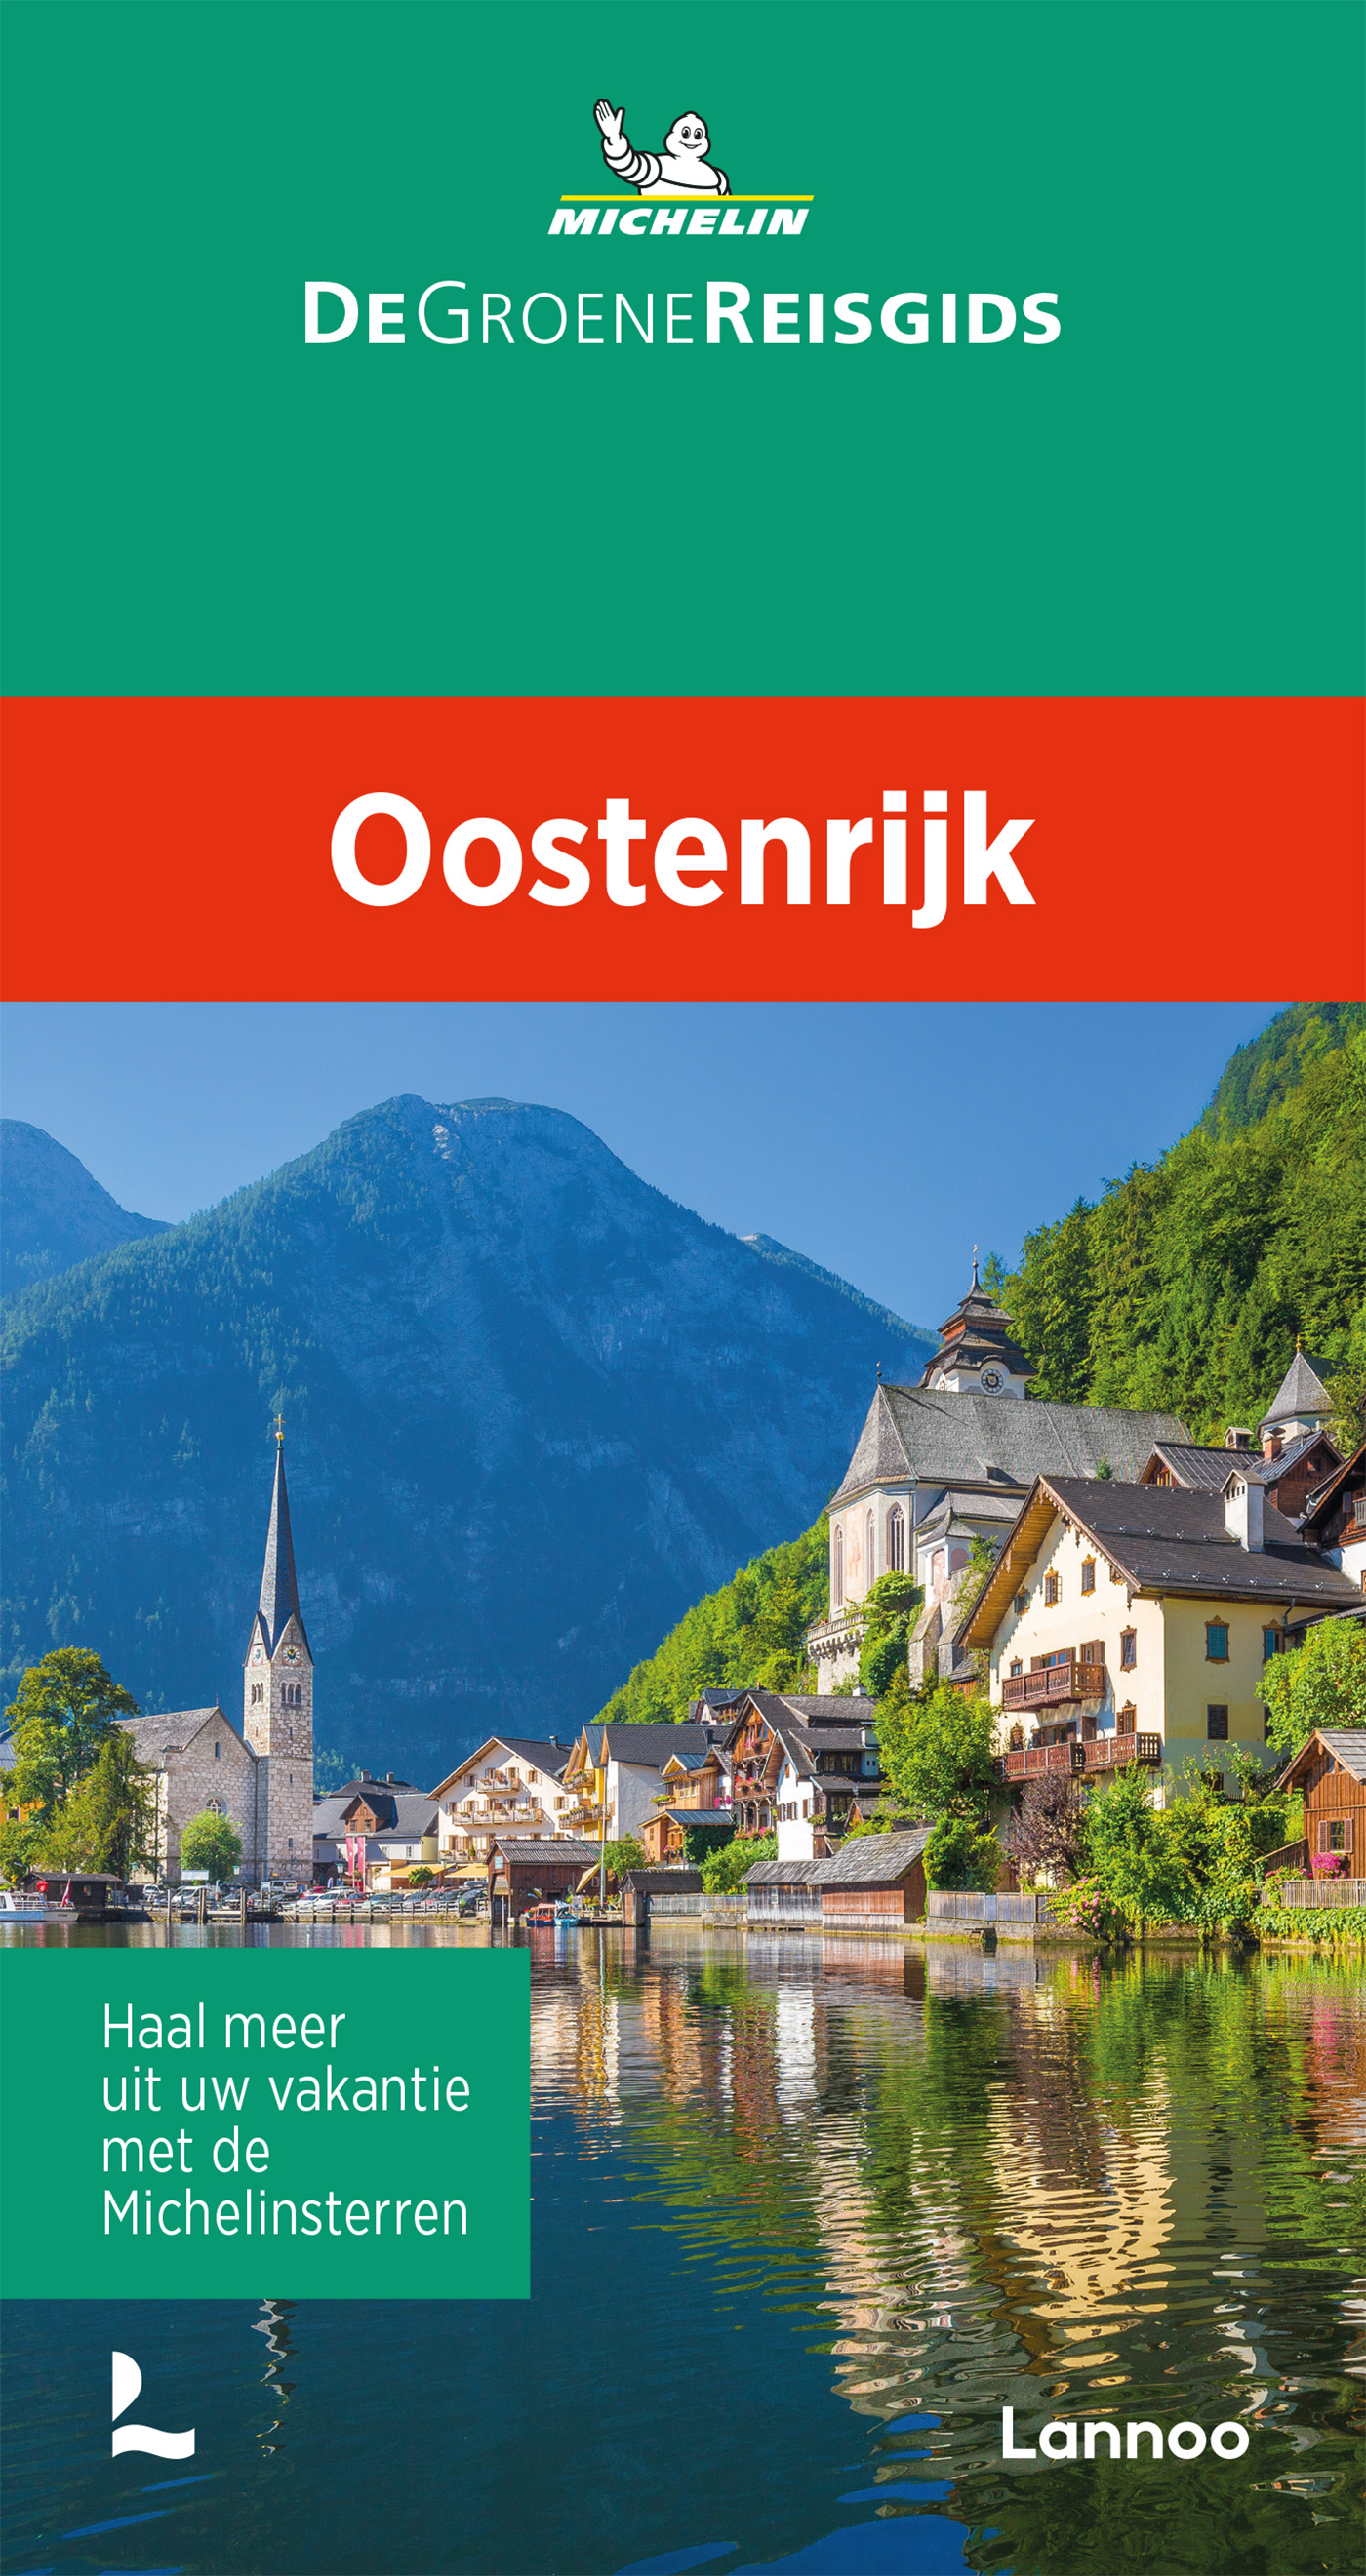 Online bestellen: Reisgids Michelin groene gids Oostenrijk | Lannoo